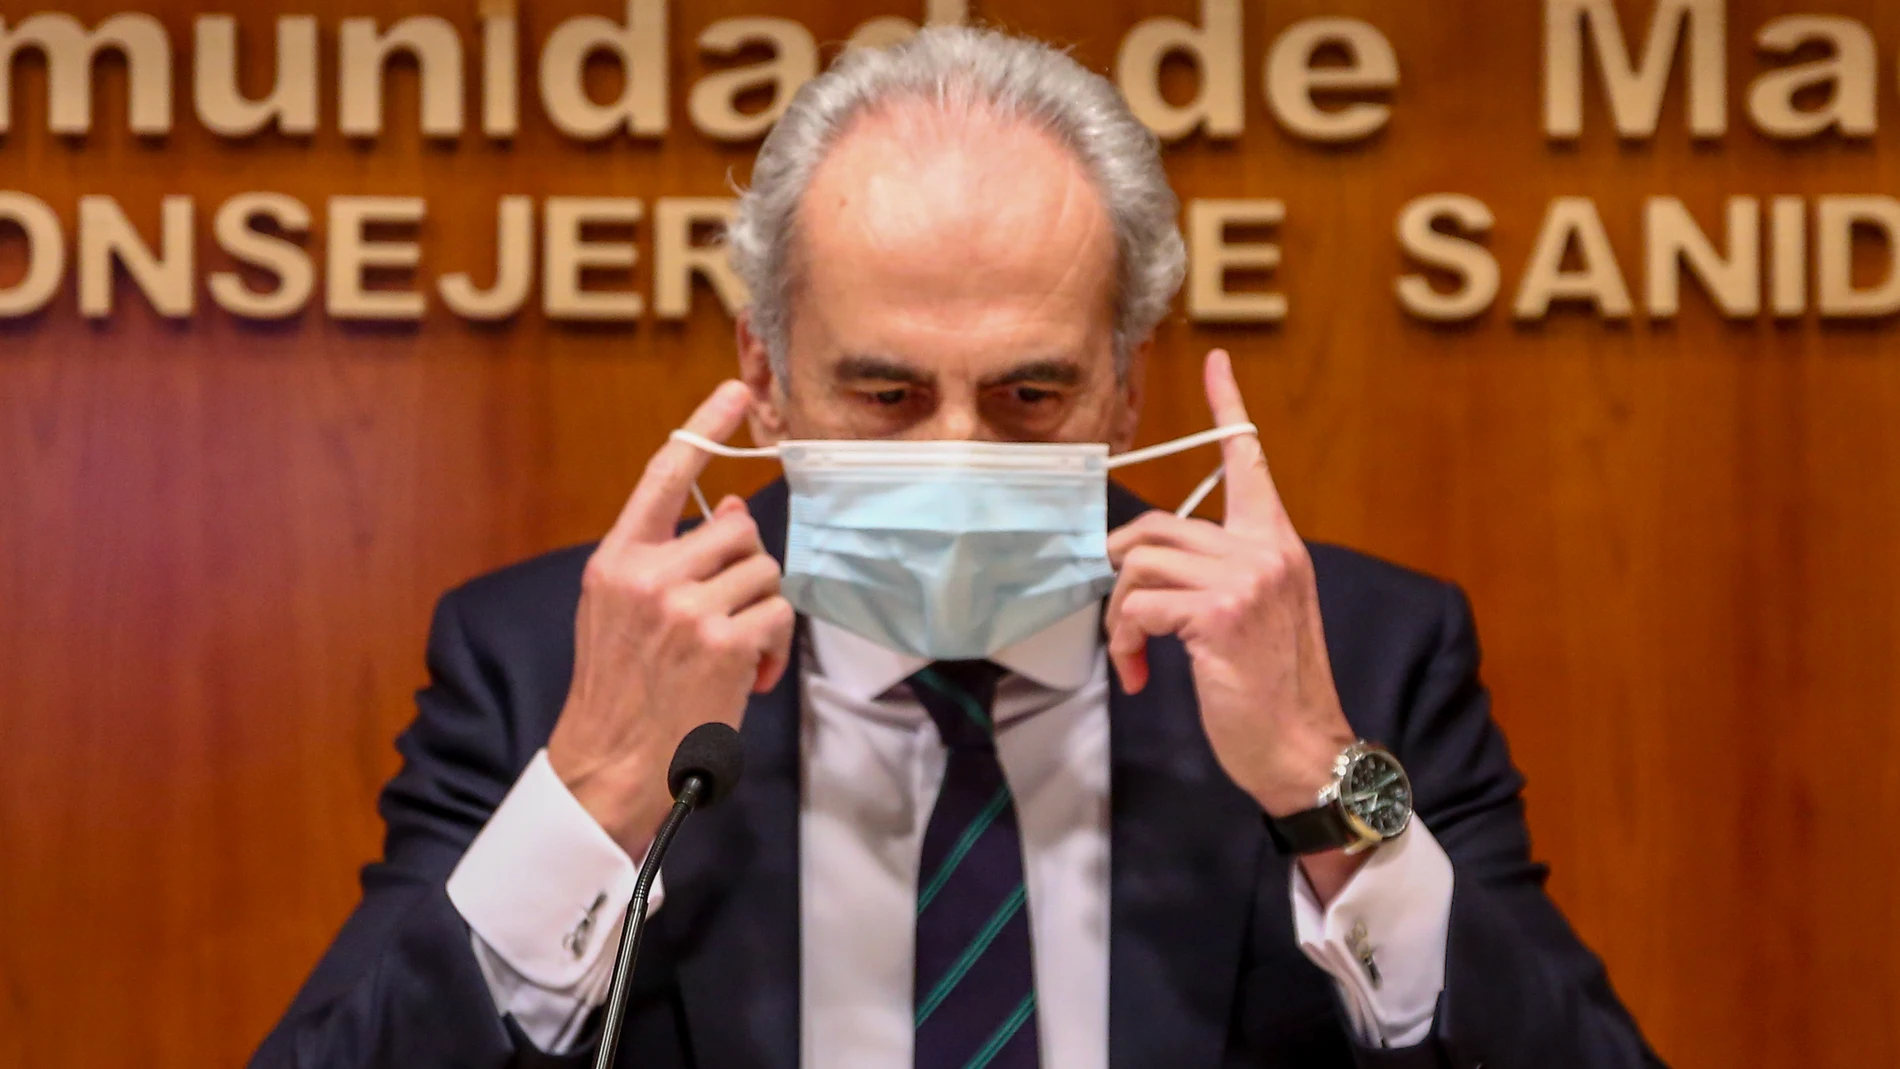 El consejero de Sanidad de la Comunidad de Madrid, Enrique Ruiz Escudero se quita la mascarilla durante la rueda de prensa para actualizar la situación epidemiológica y asistencial en la región, en la Consejería de Sanidad